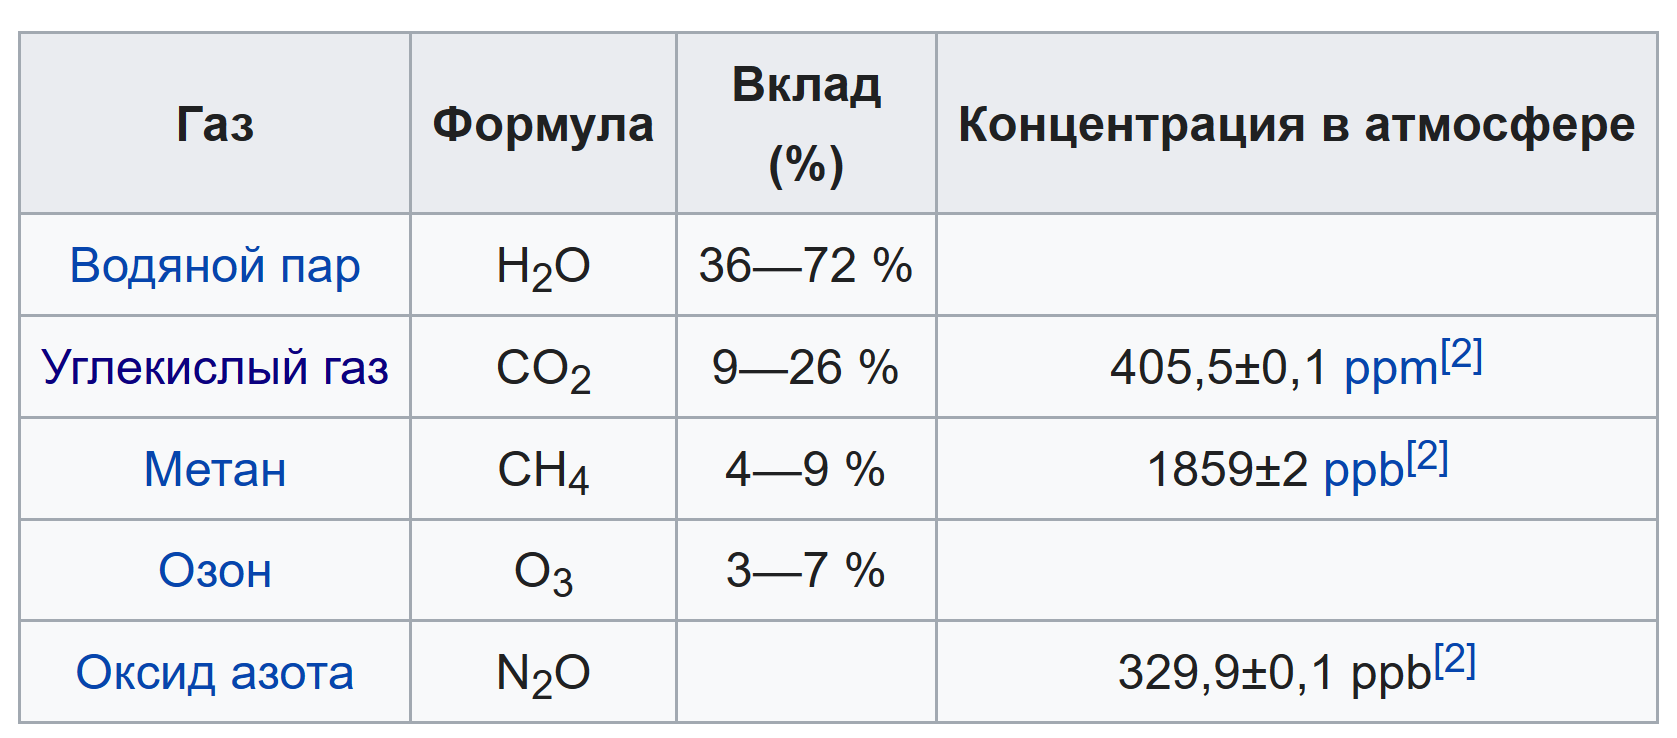 Метан и водяной пар являются парниковыми газами. Метан и водяной пар. Метан с водяным паром. Какой ГАЗ не относится к парниковым. Метан с водяным паром при высоких температурах.